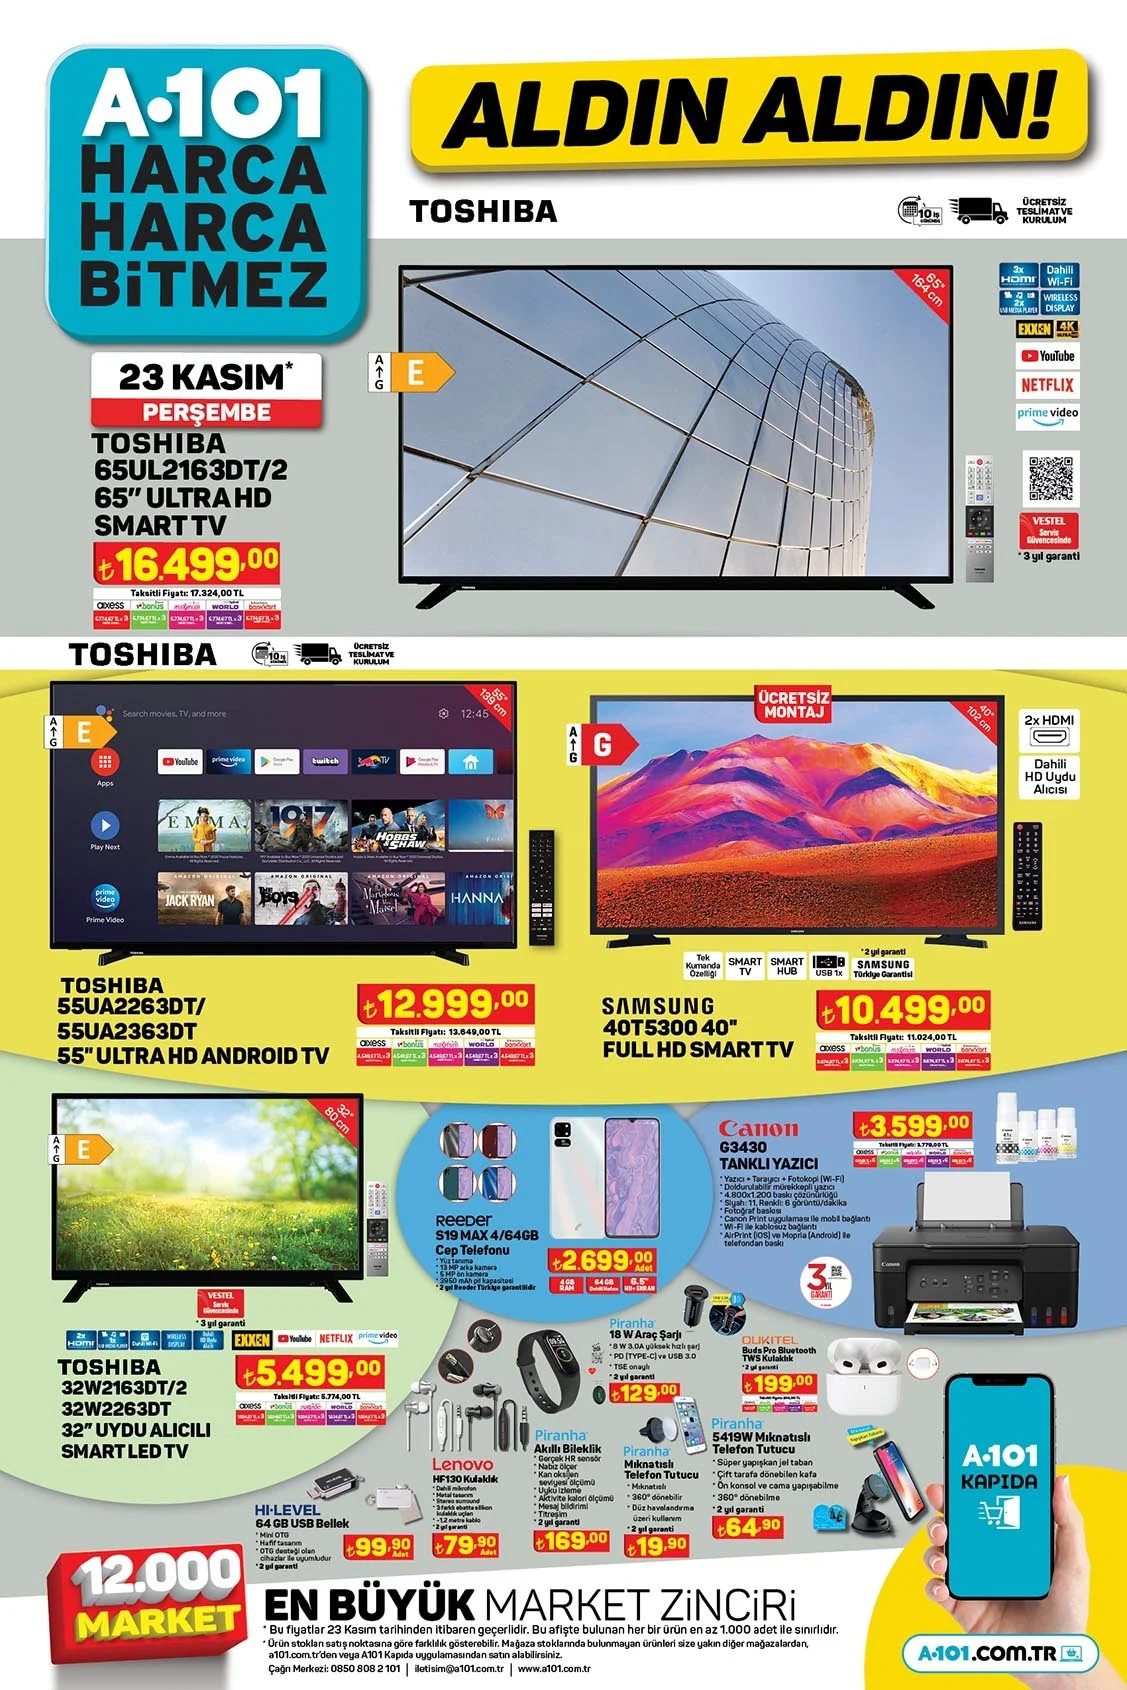 Haftaya A101 marketlerde Samsung ve Toshiba akıllı televizyonlar var